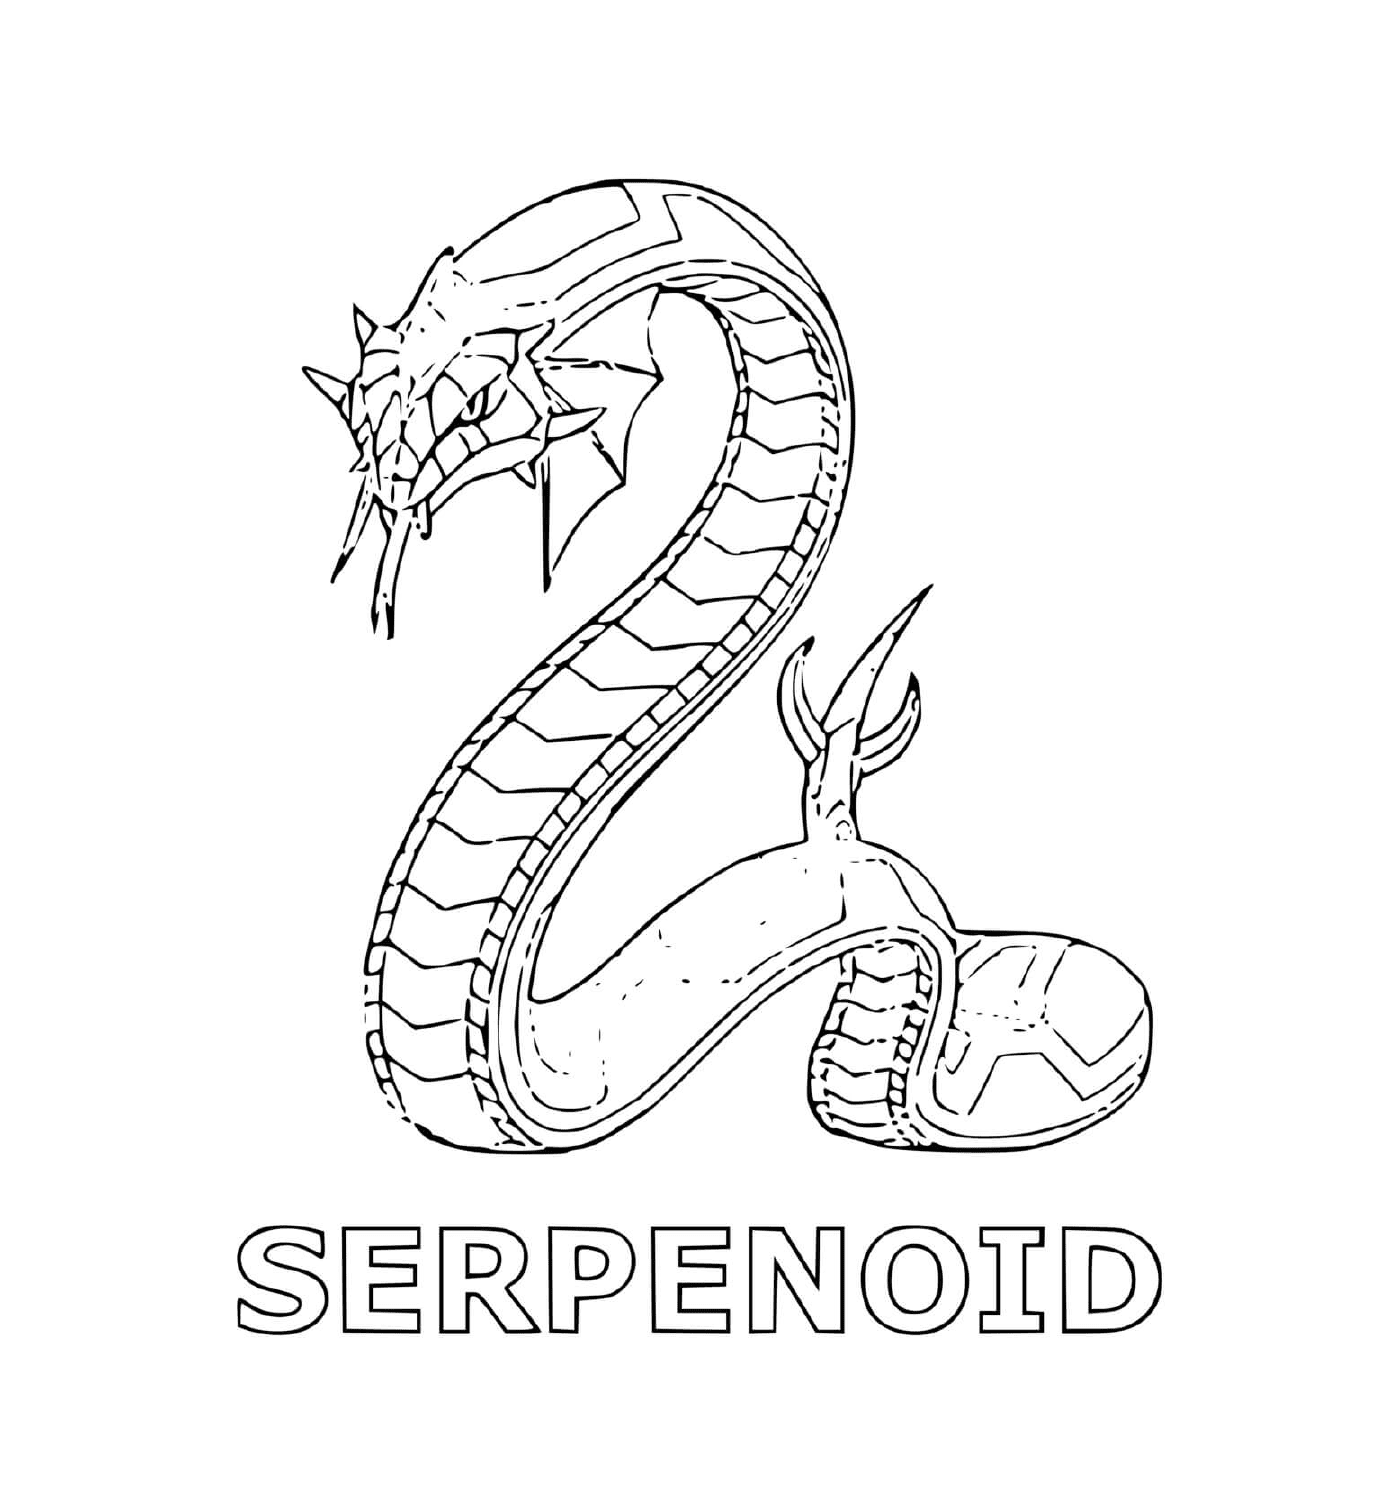  una serpiente con la palabra serpenoide debajo 